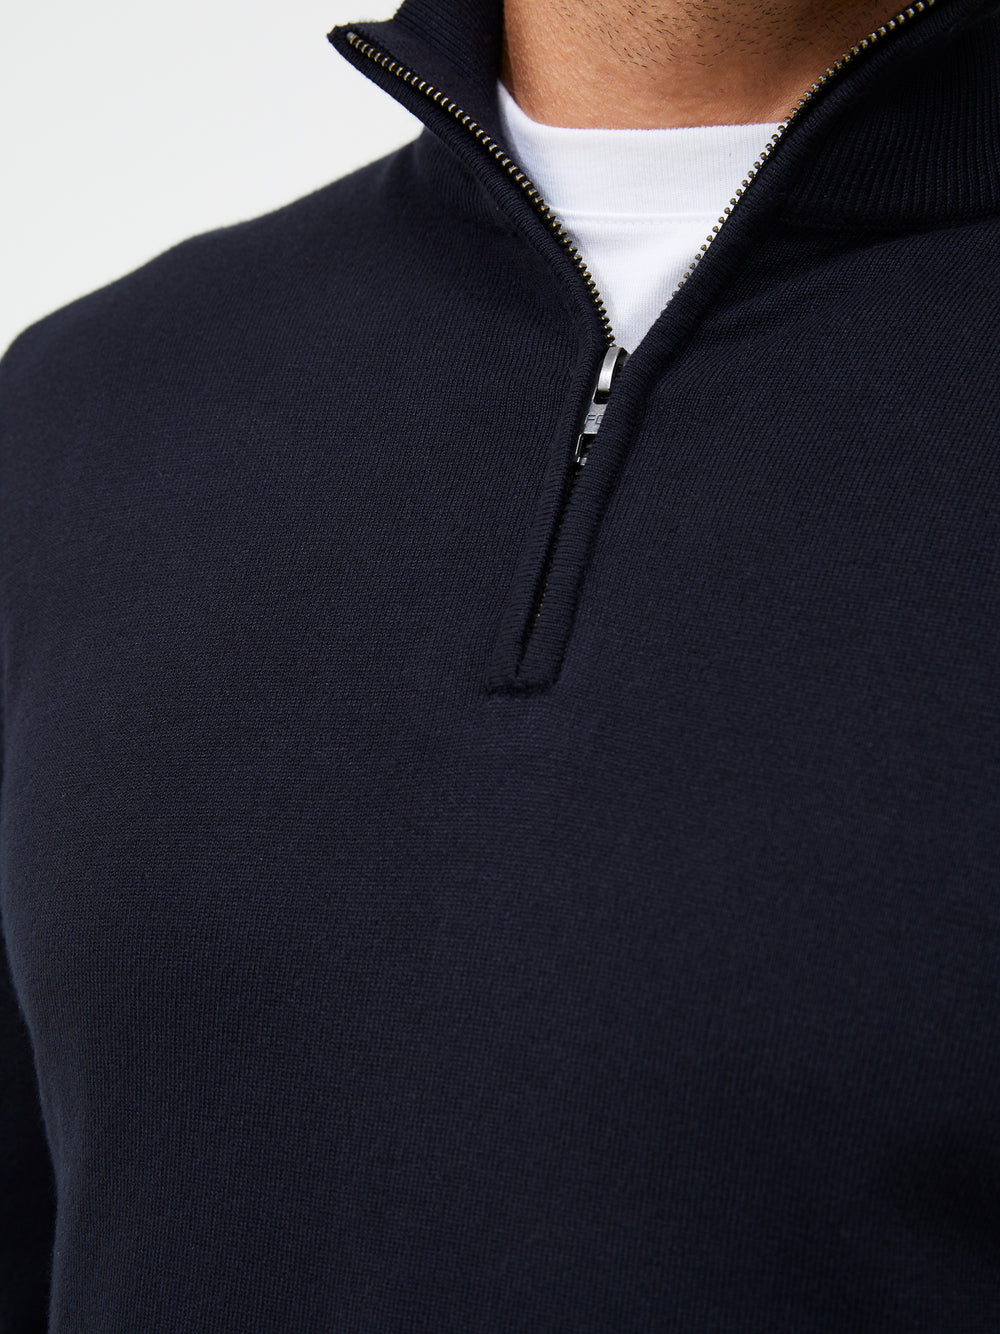 Half Zip Sweatshirt Dark Navy | French Connection UK